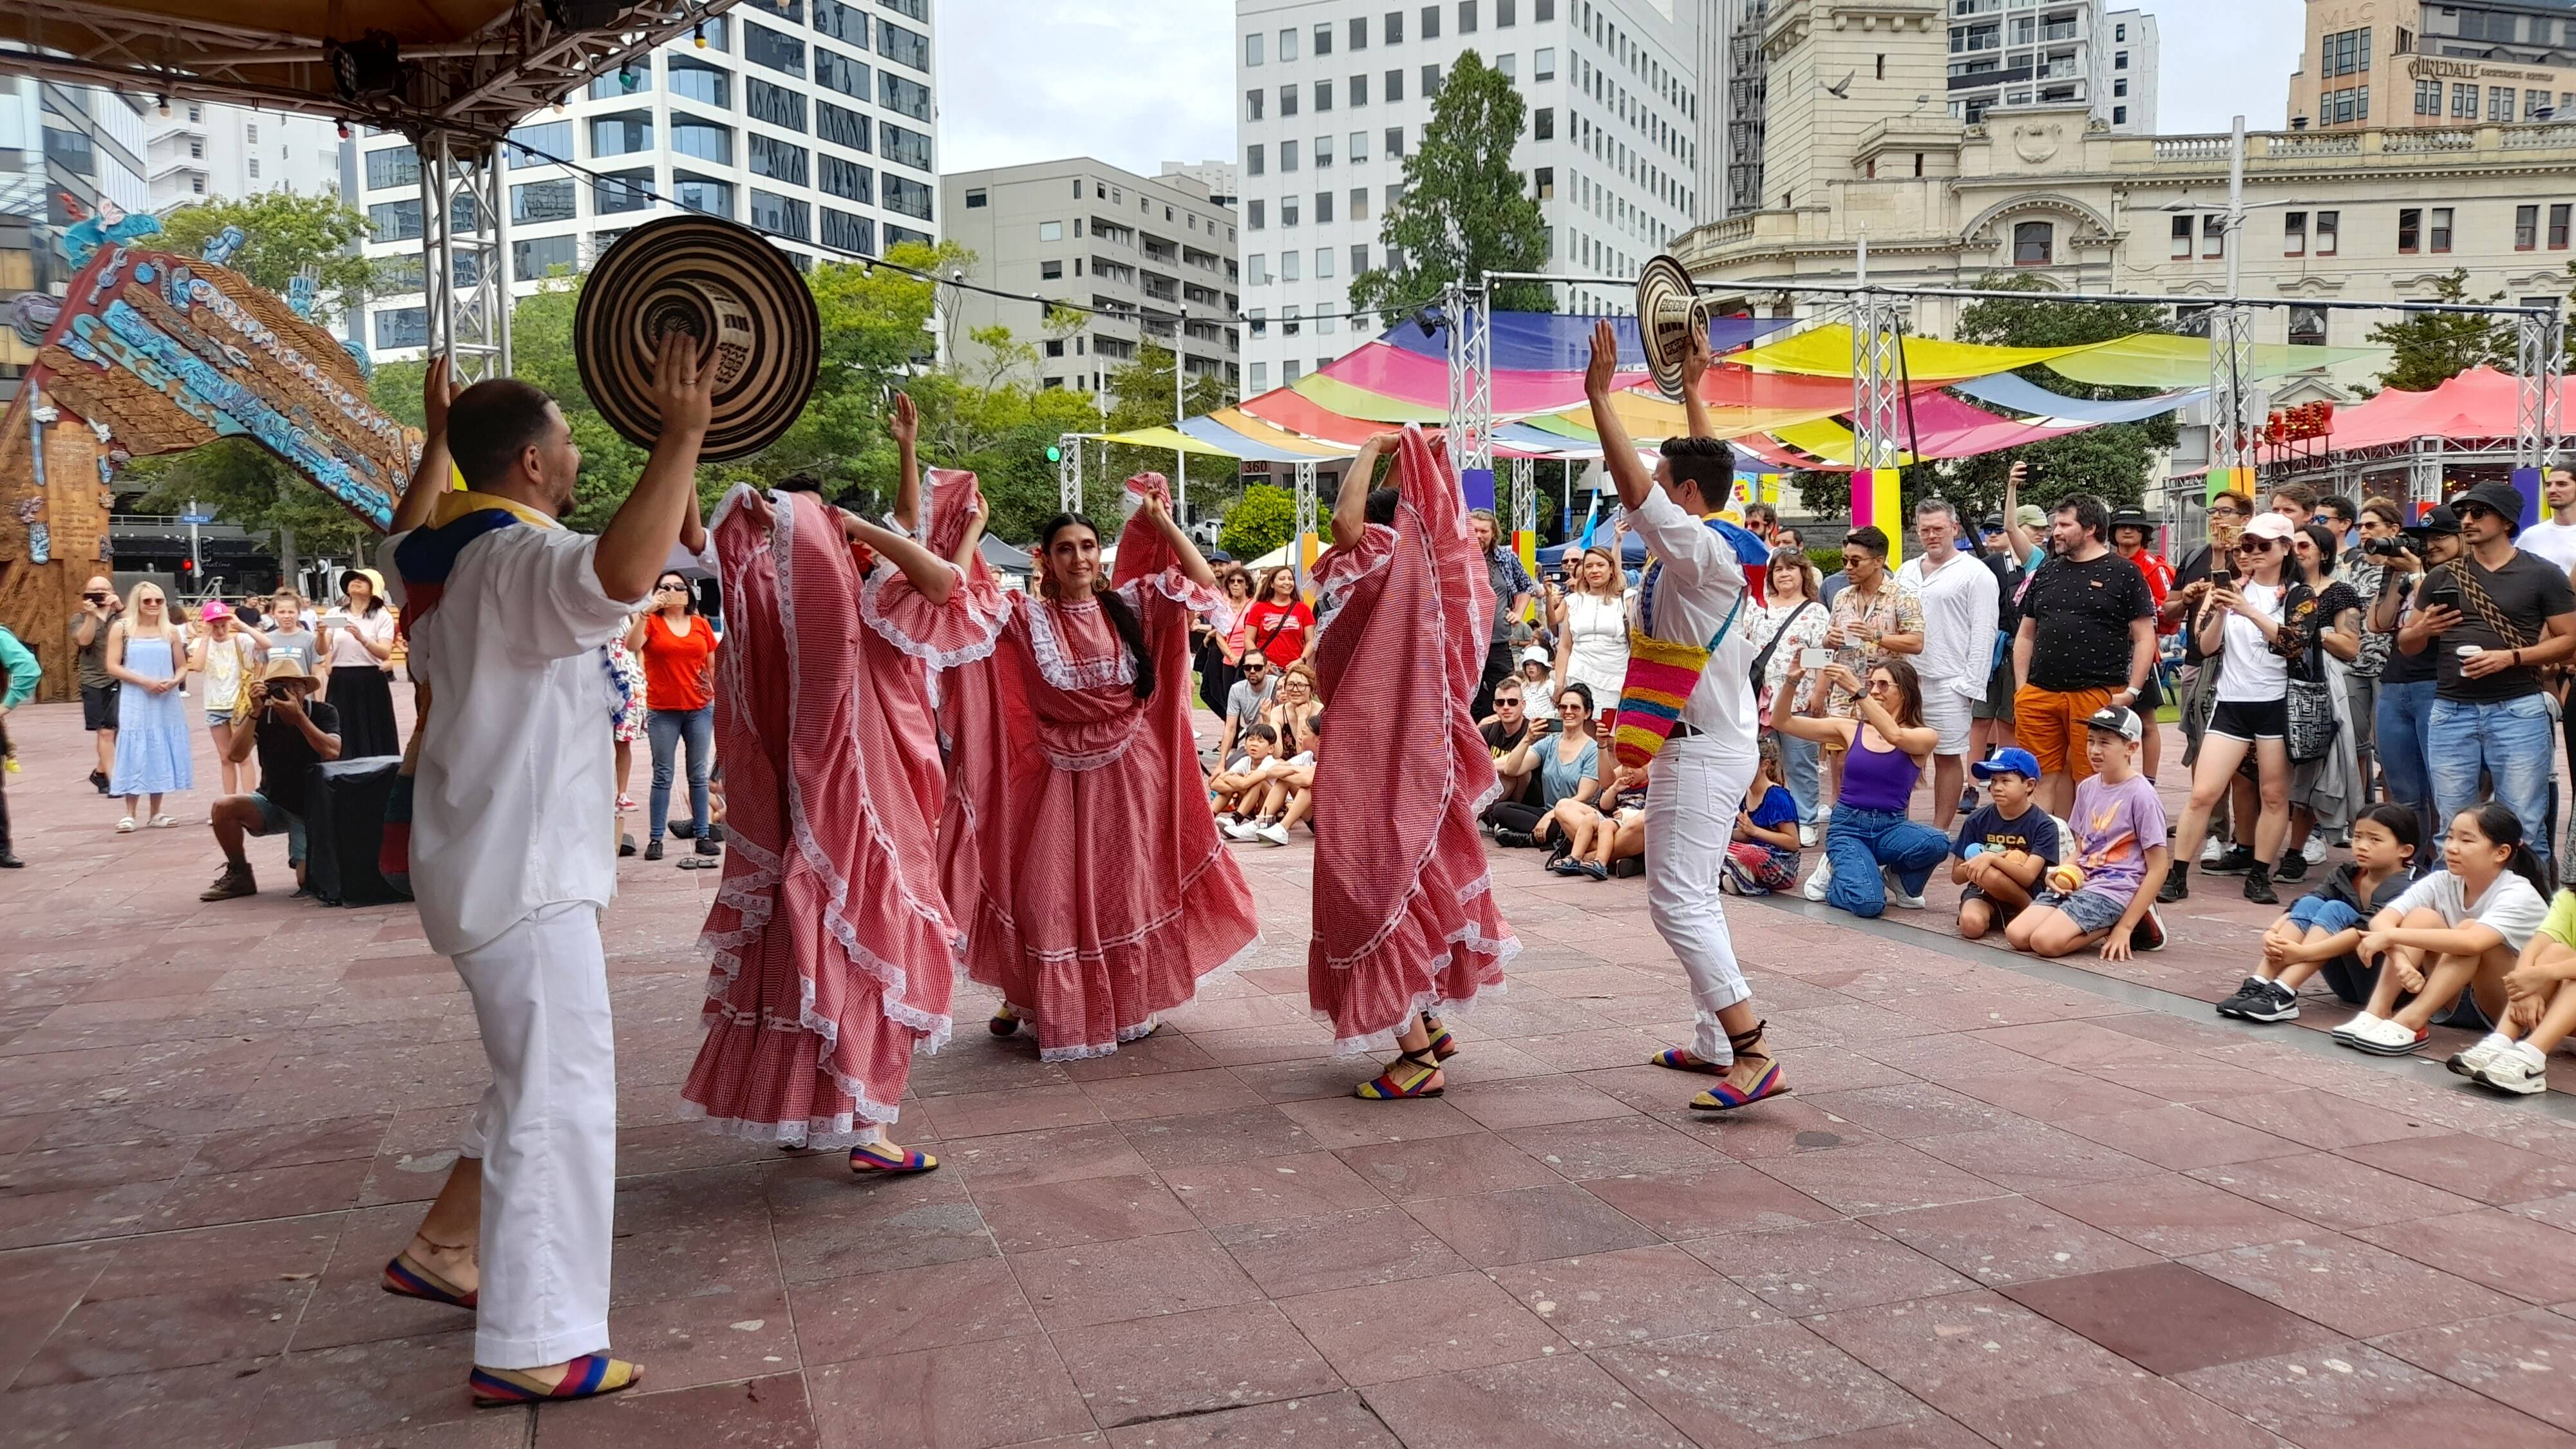 Auckland Latin Fiesta